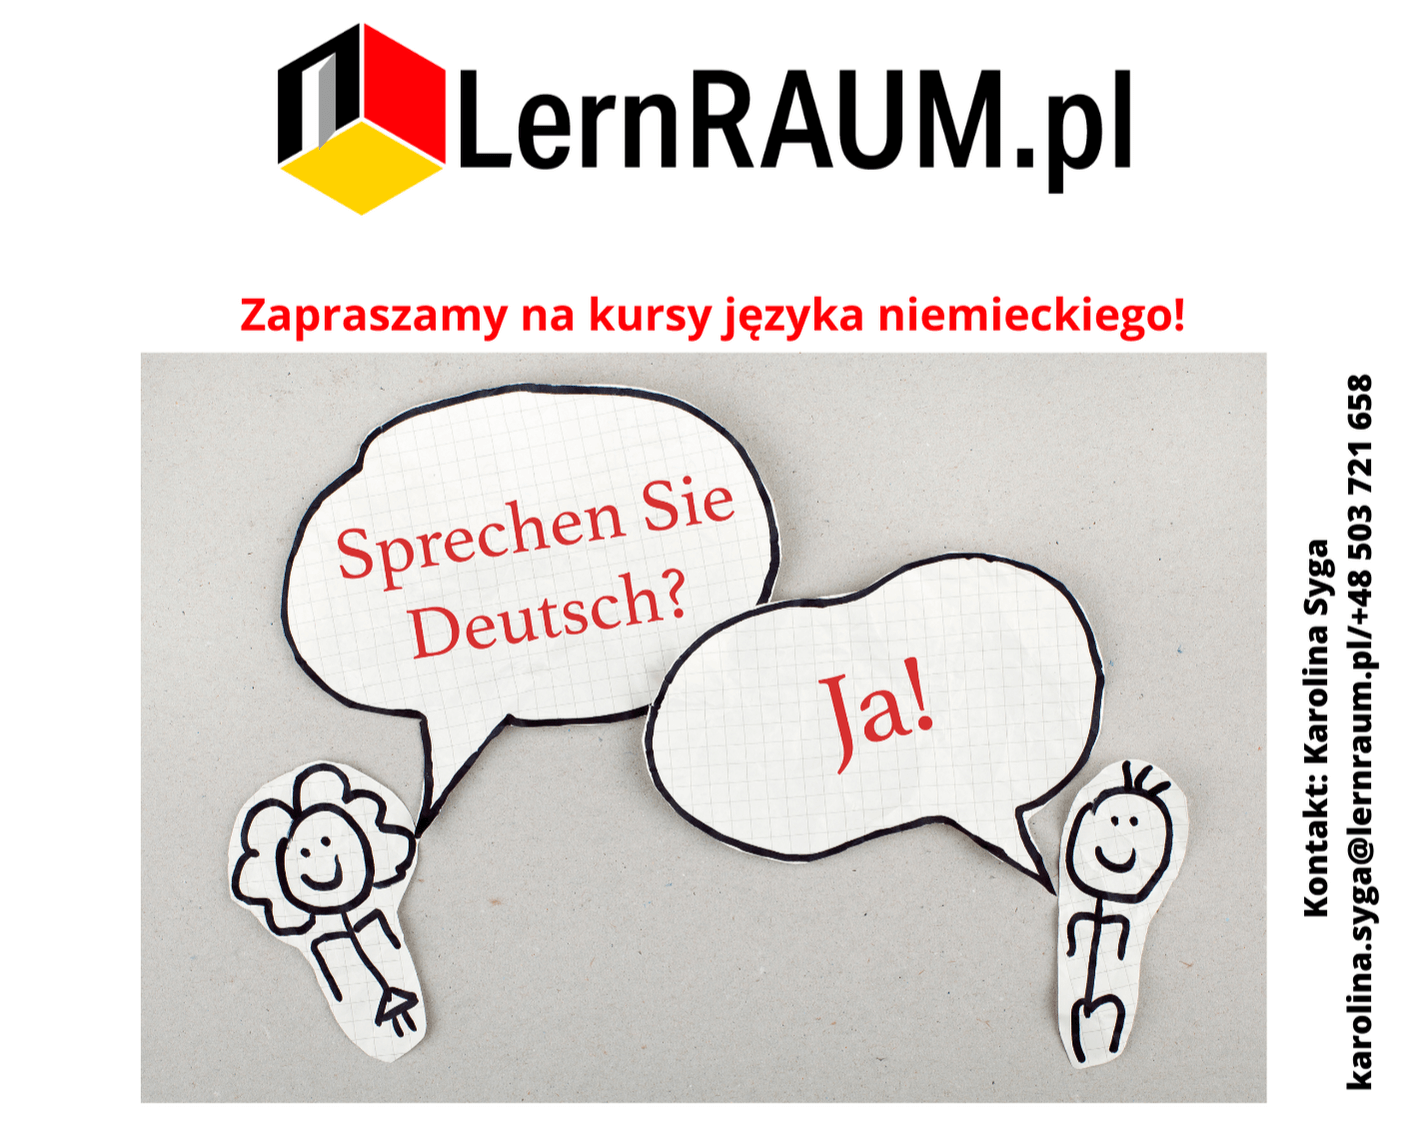 Sprachkurse bei LernRAUM.pl!